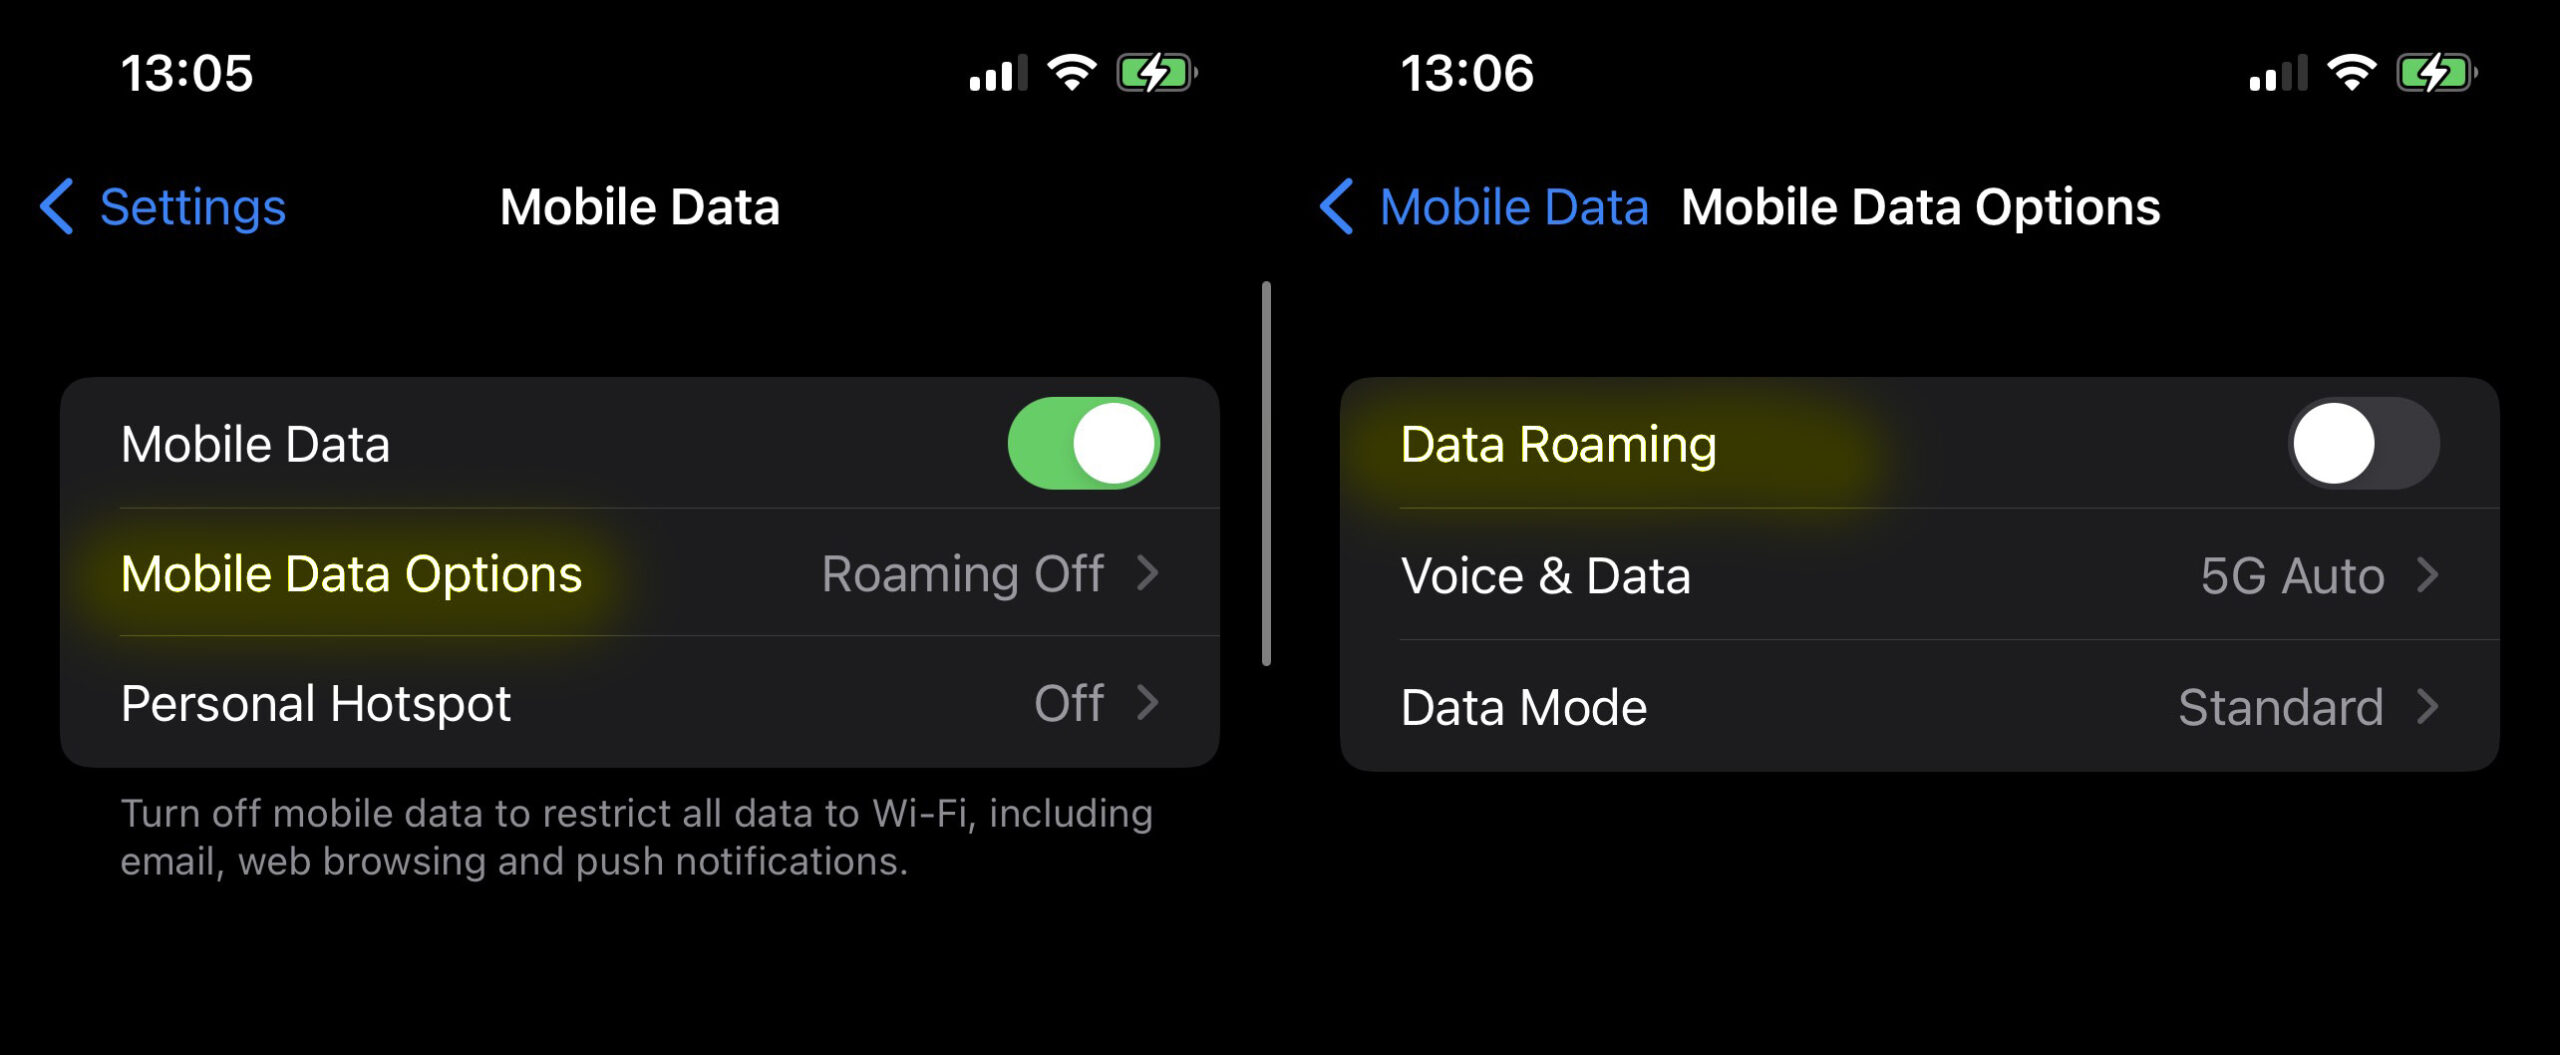 Kuidas Apple iPhone seadmetel roaming välja lülitada